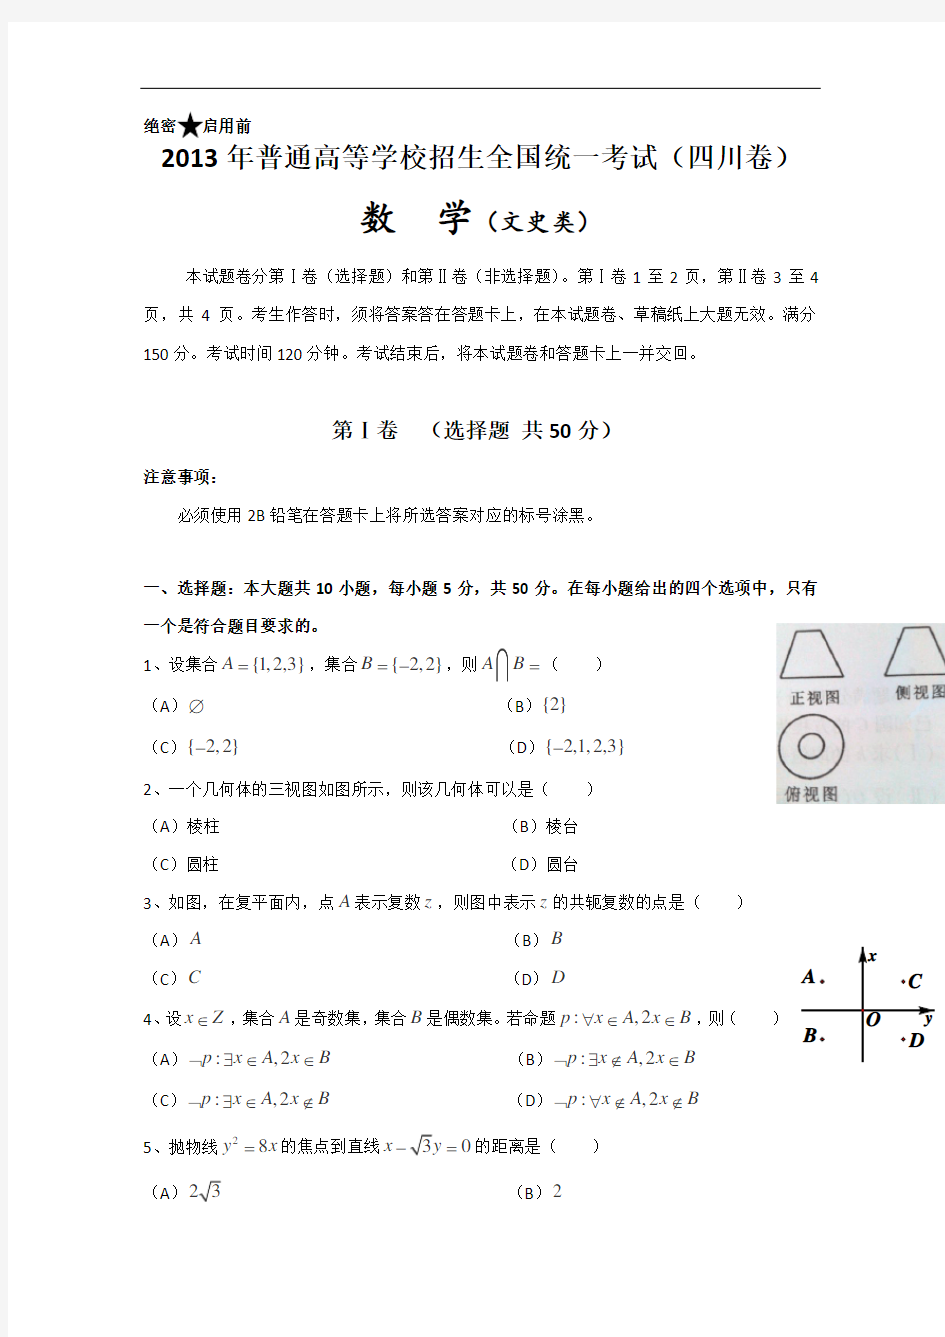 2013年高考真题——文科数学(四川卷)解析版